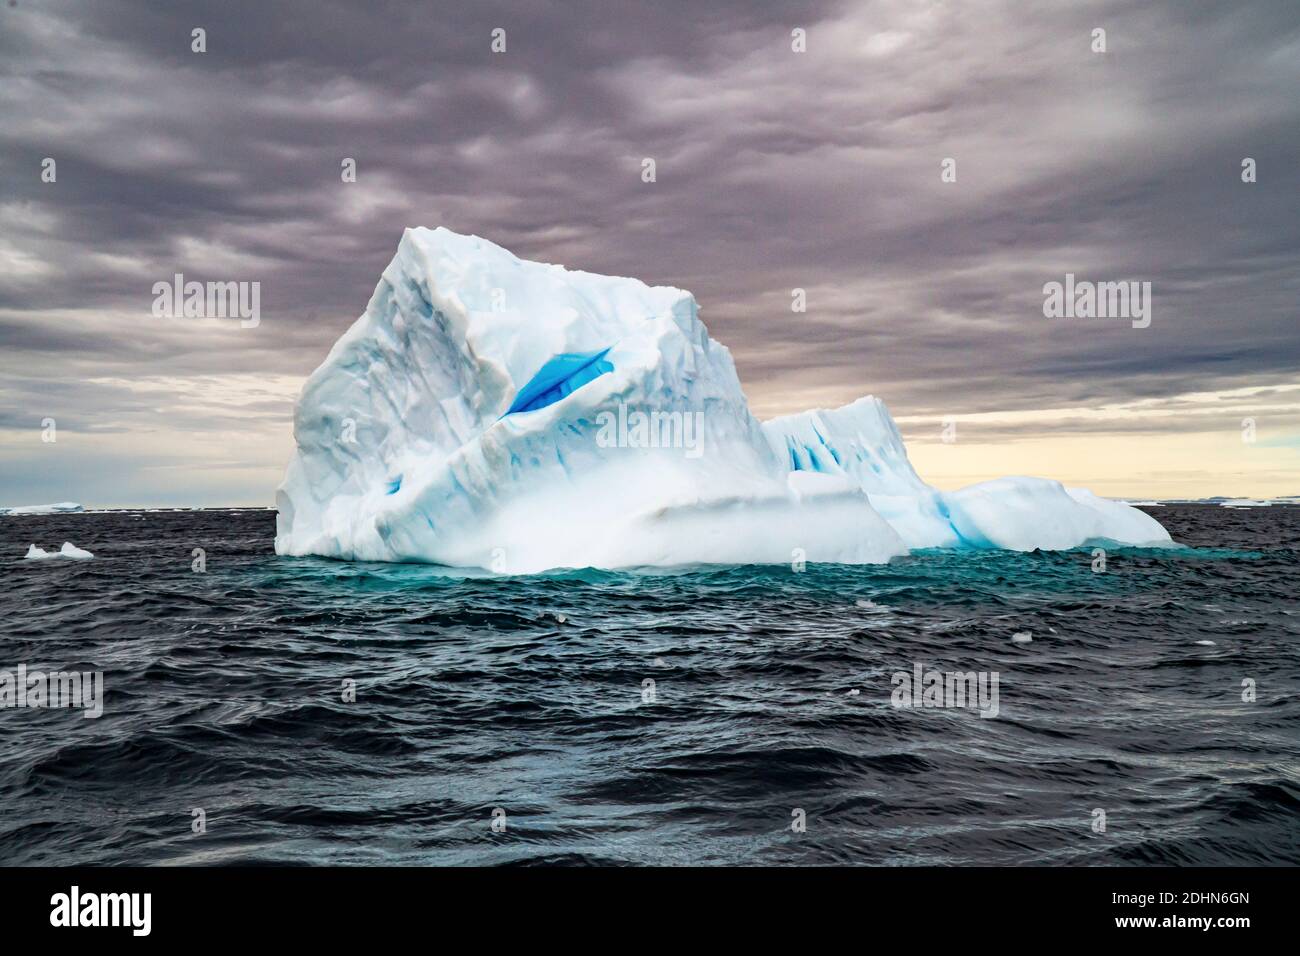 Schmelzenden Eisbergs Eisscholle im Vordergrund, Schwimmen im Meer, Antarktis. Stockfoto